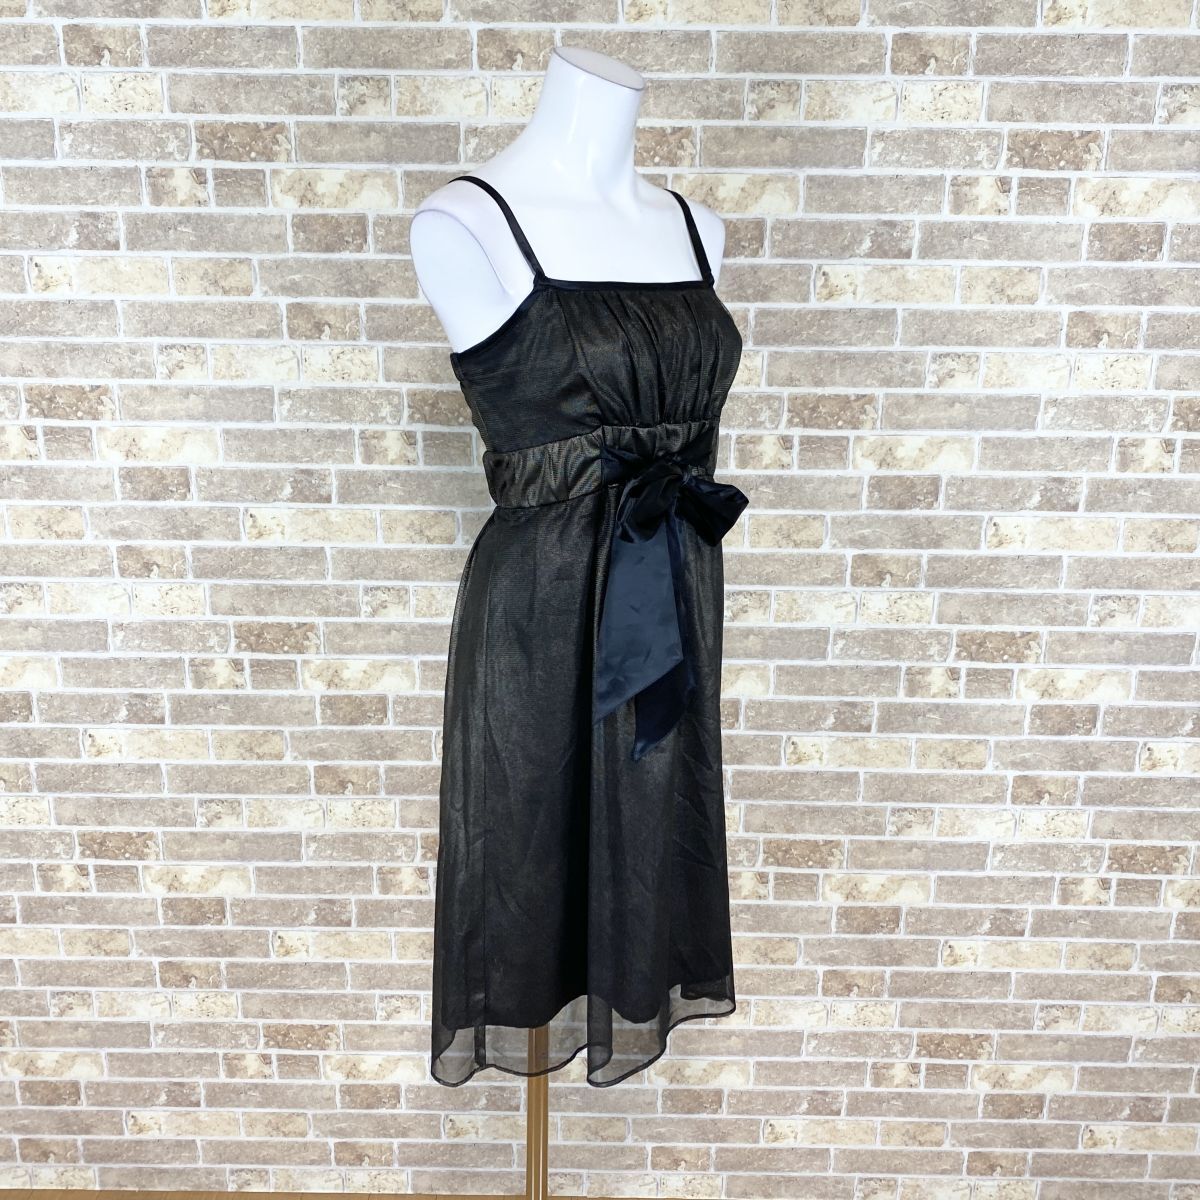 1 иен платье Dear Princess Cami платье средний ткань чёрный чай золотой серия гонки цветное платье kyabadore презентация Event б/у 4669